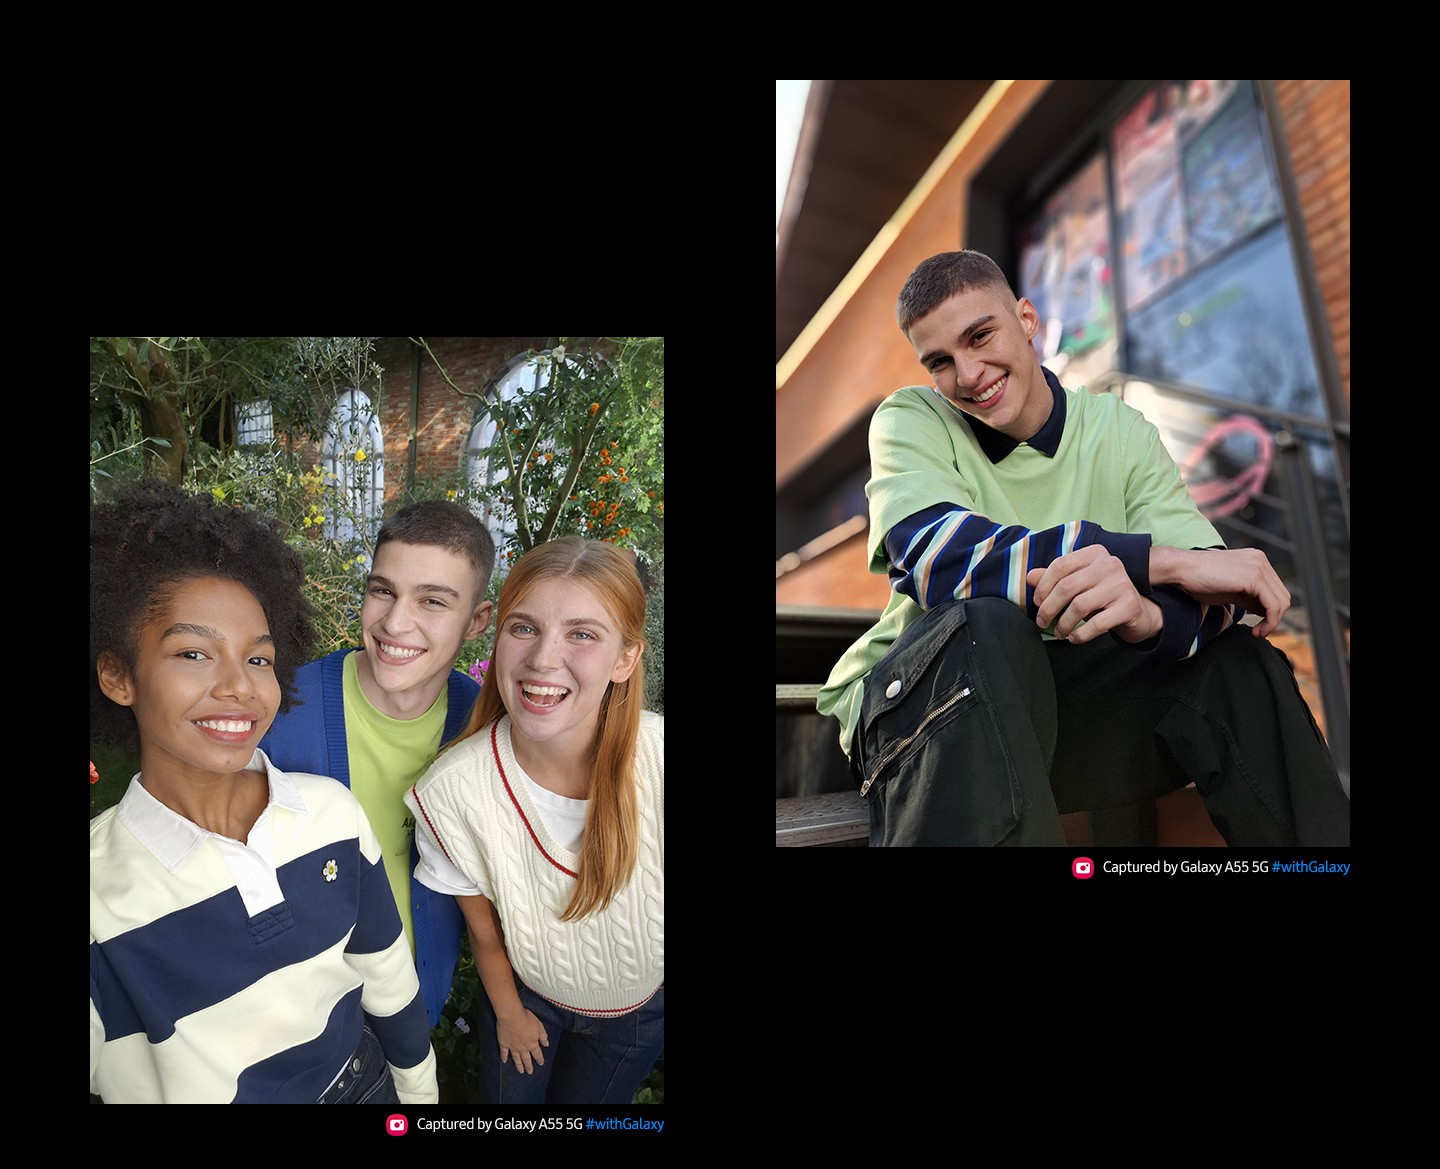 Zu sehen sind zwei Portrts. Das erste Portrt ist ein Selfie von drei Freunden mit frhlichen Gesichtsausdrcken, die eng miteinander posieren. Das zweite Portrt wurde mit dem Portrt-Modus aufgenommen. Darauf ist eine lssig sitzende, lchelnde Person vor einem verschwommenen Gebude im Hintergrund zu sehen. Der Text liest: "Aufgenommen mit dem Galaxy A55 5G #withGalaxy".